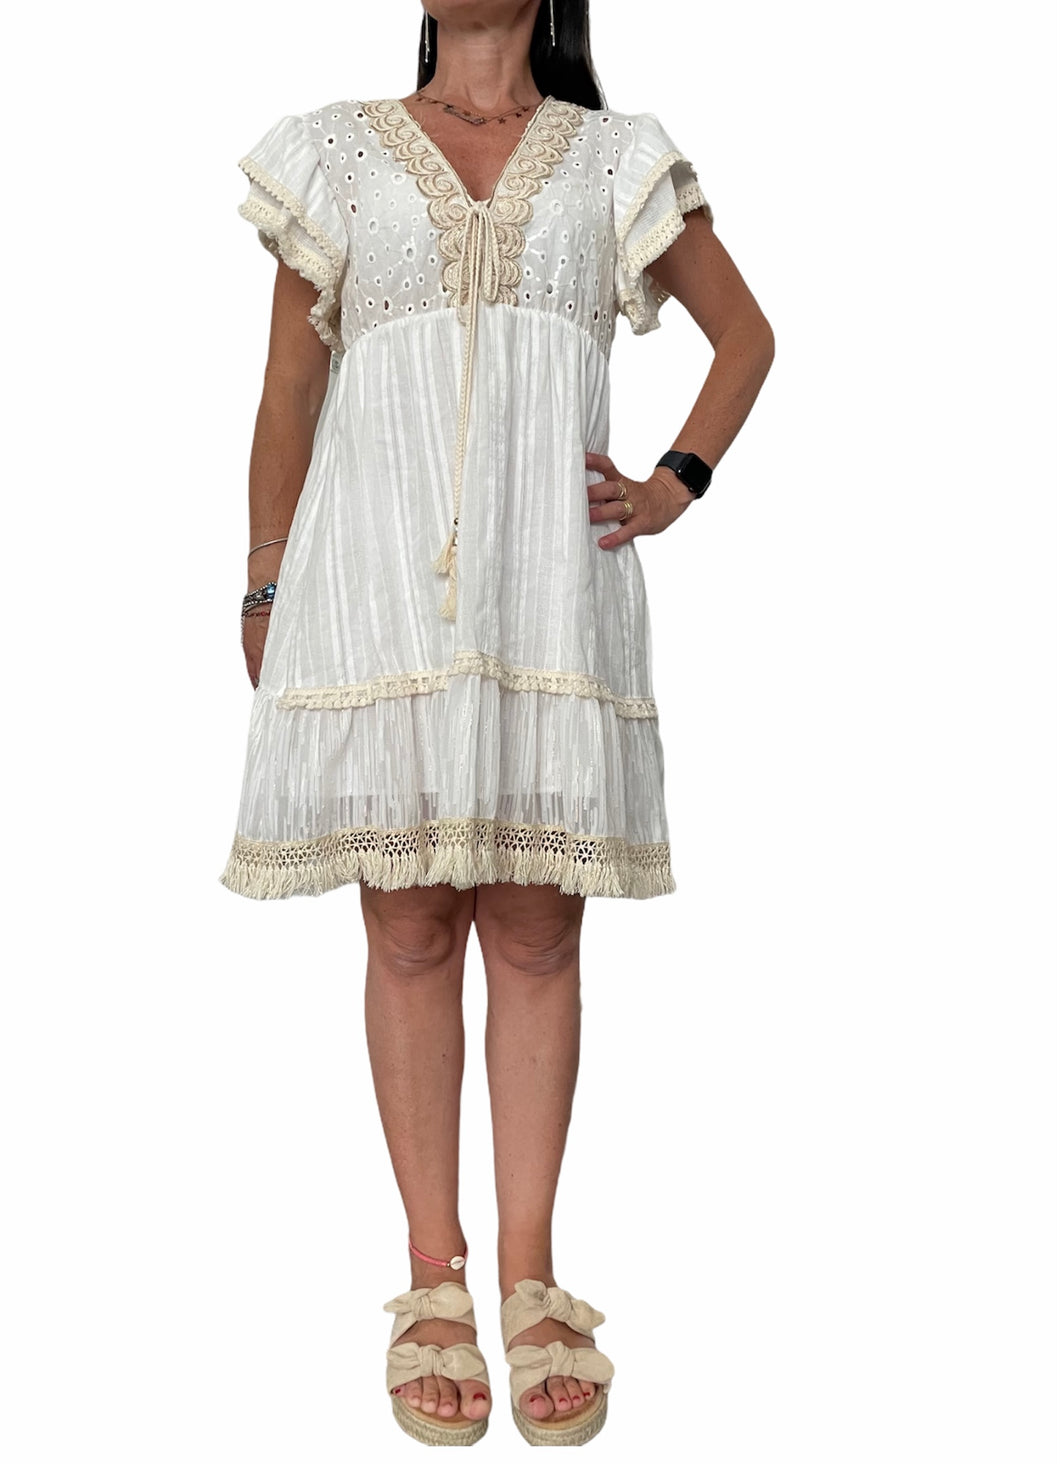 Vestito donna Abito sc-50% corto Stile Positano colore bianco Made in Italy